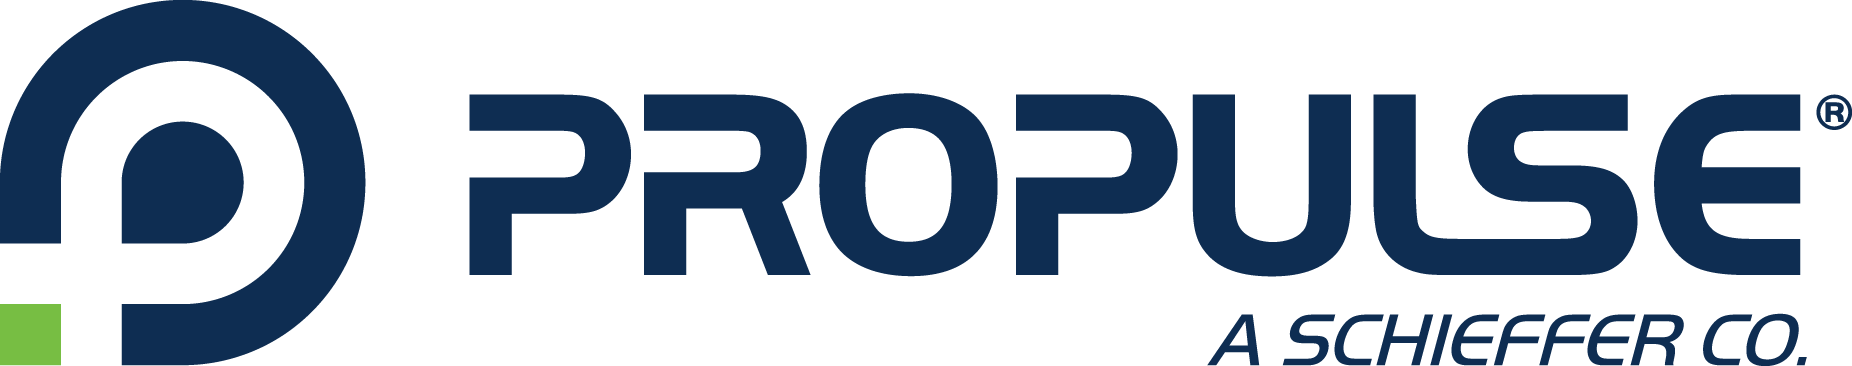 ProPulse, A Schieffer Company logo